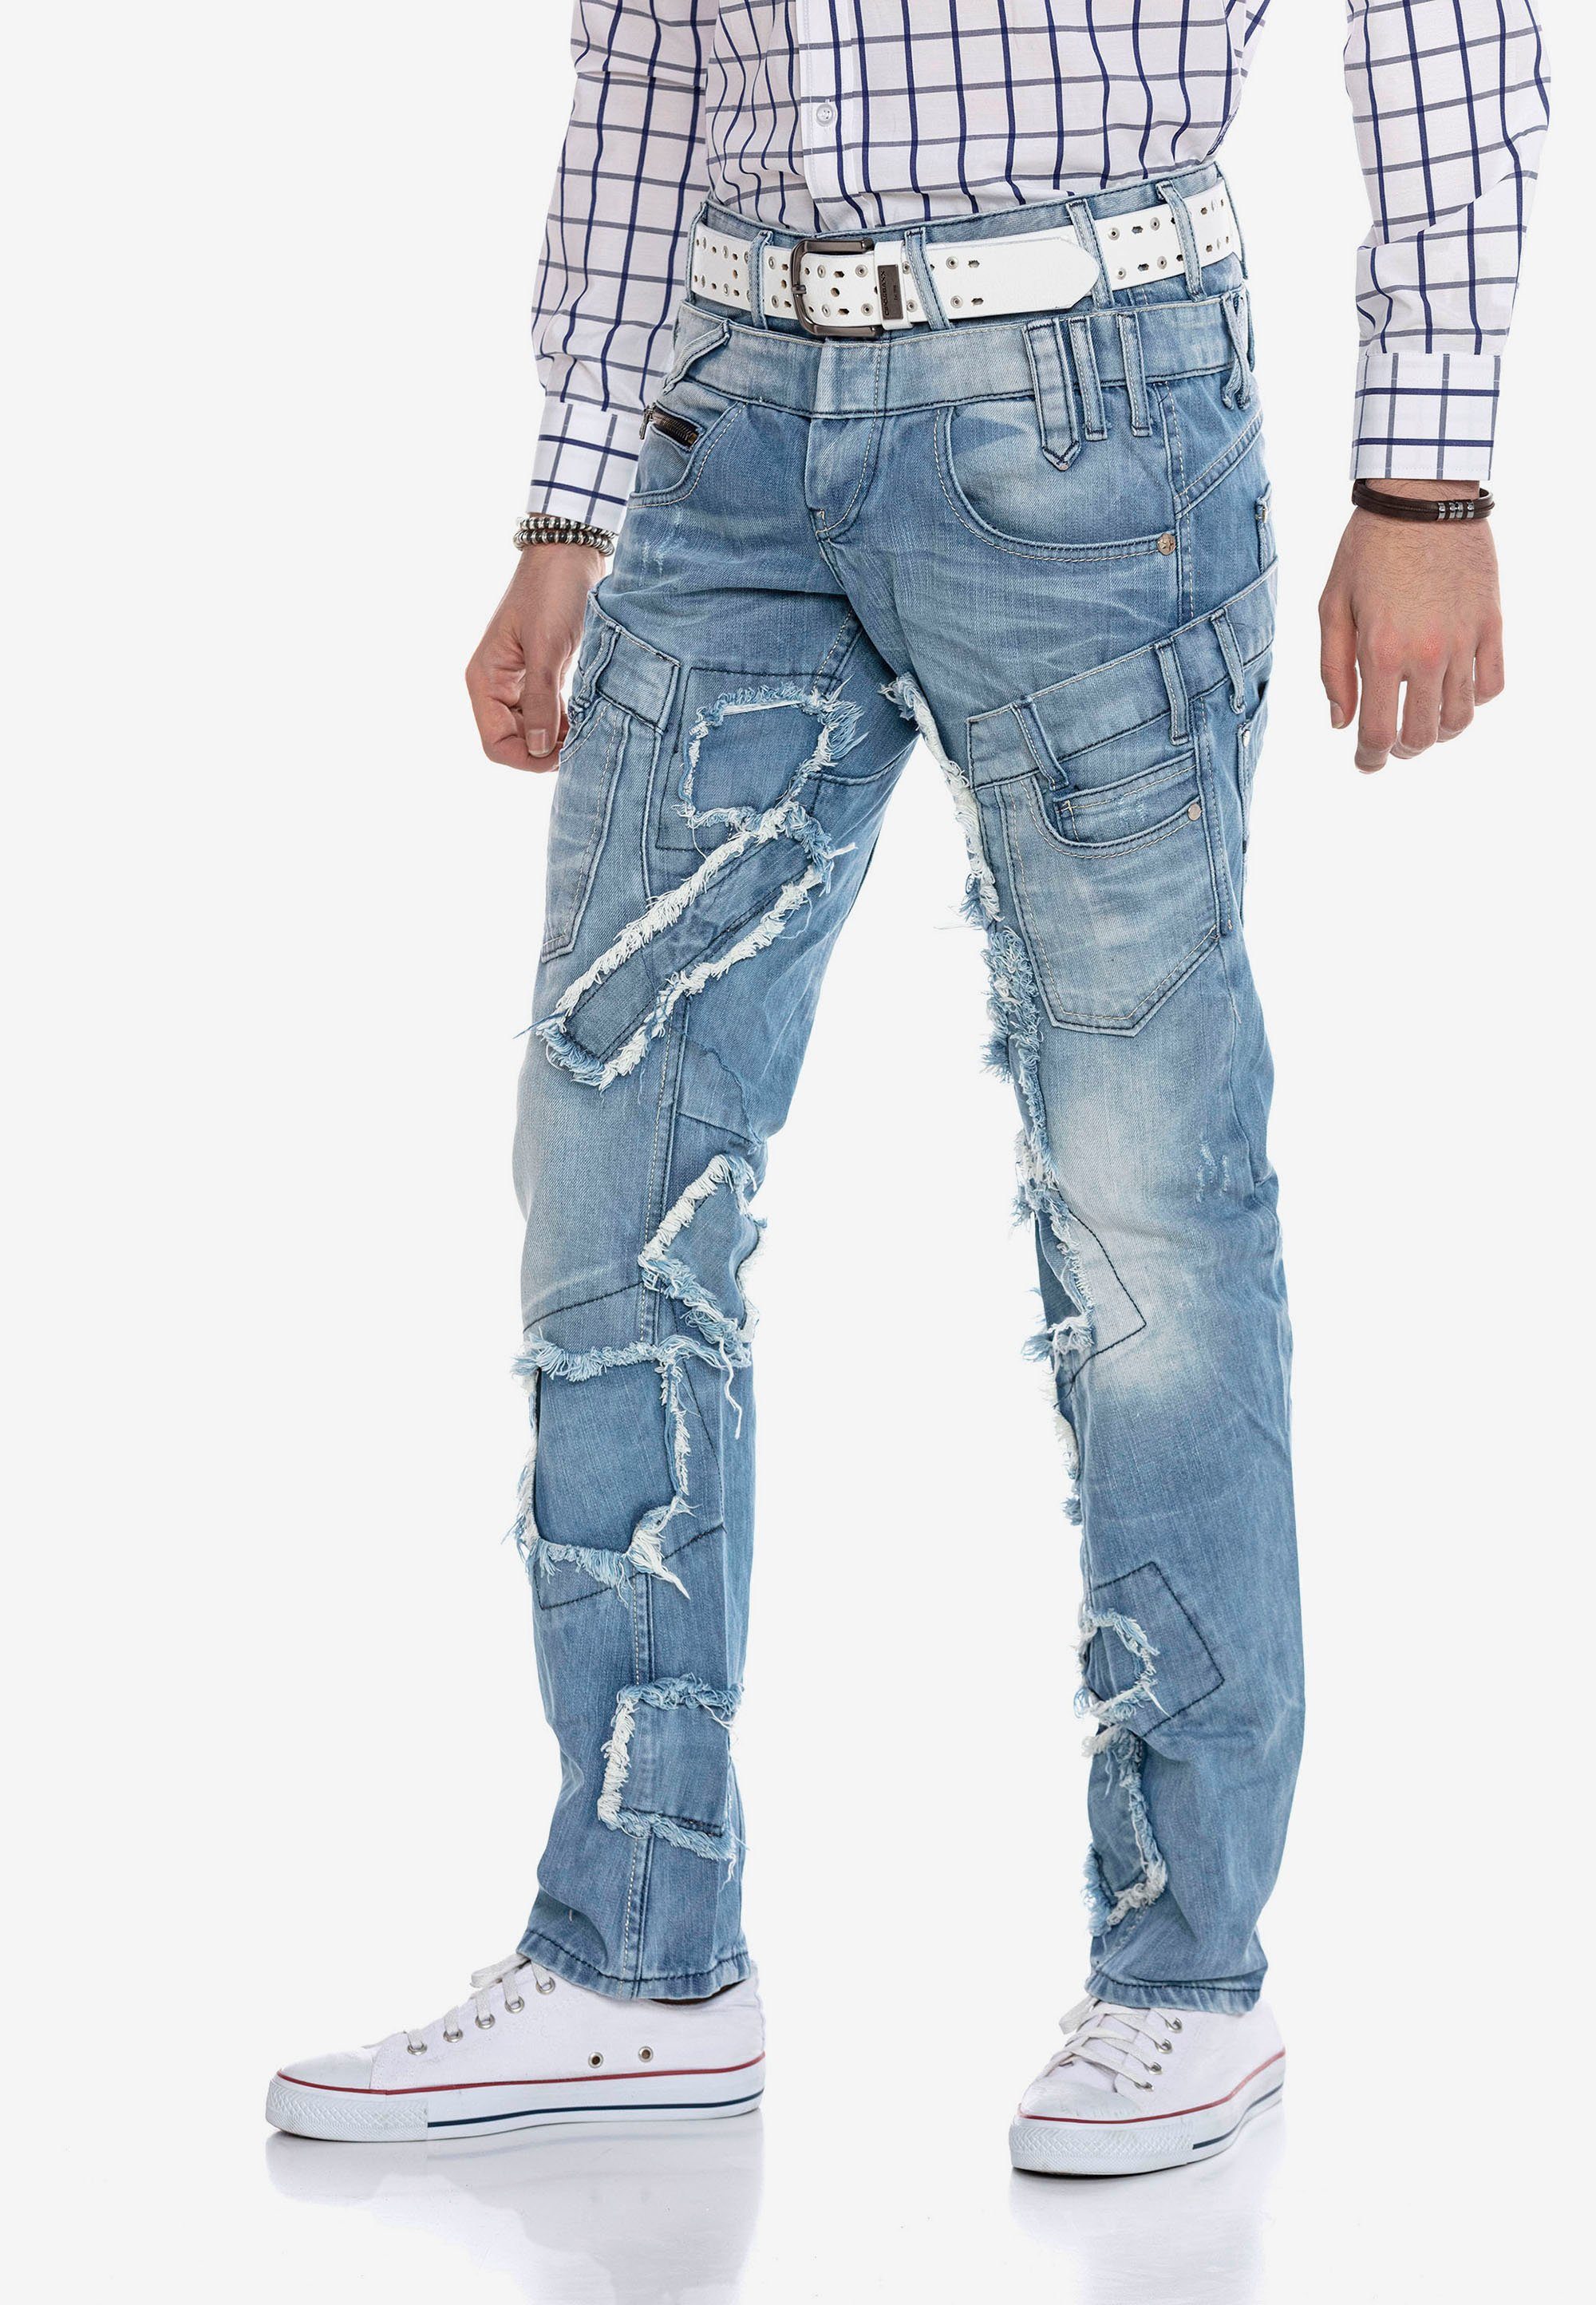 Patchwork-Design trendigen Bequeme Baxx im Cipo & Jeans